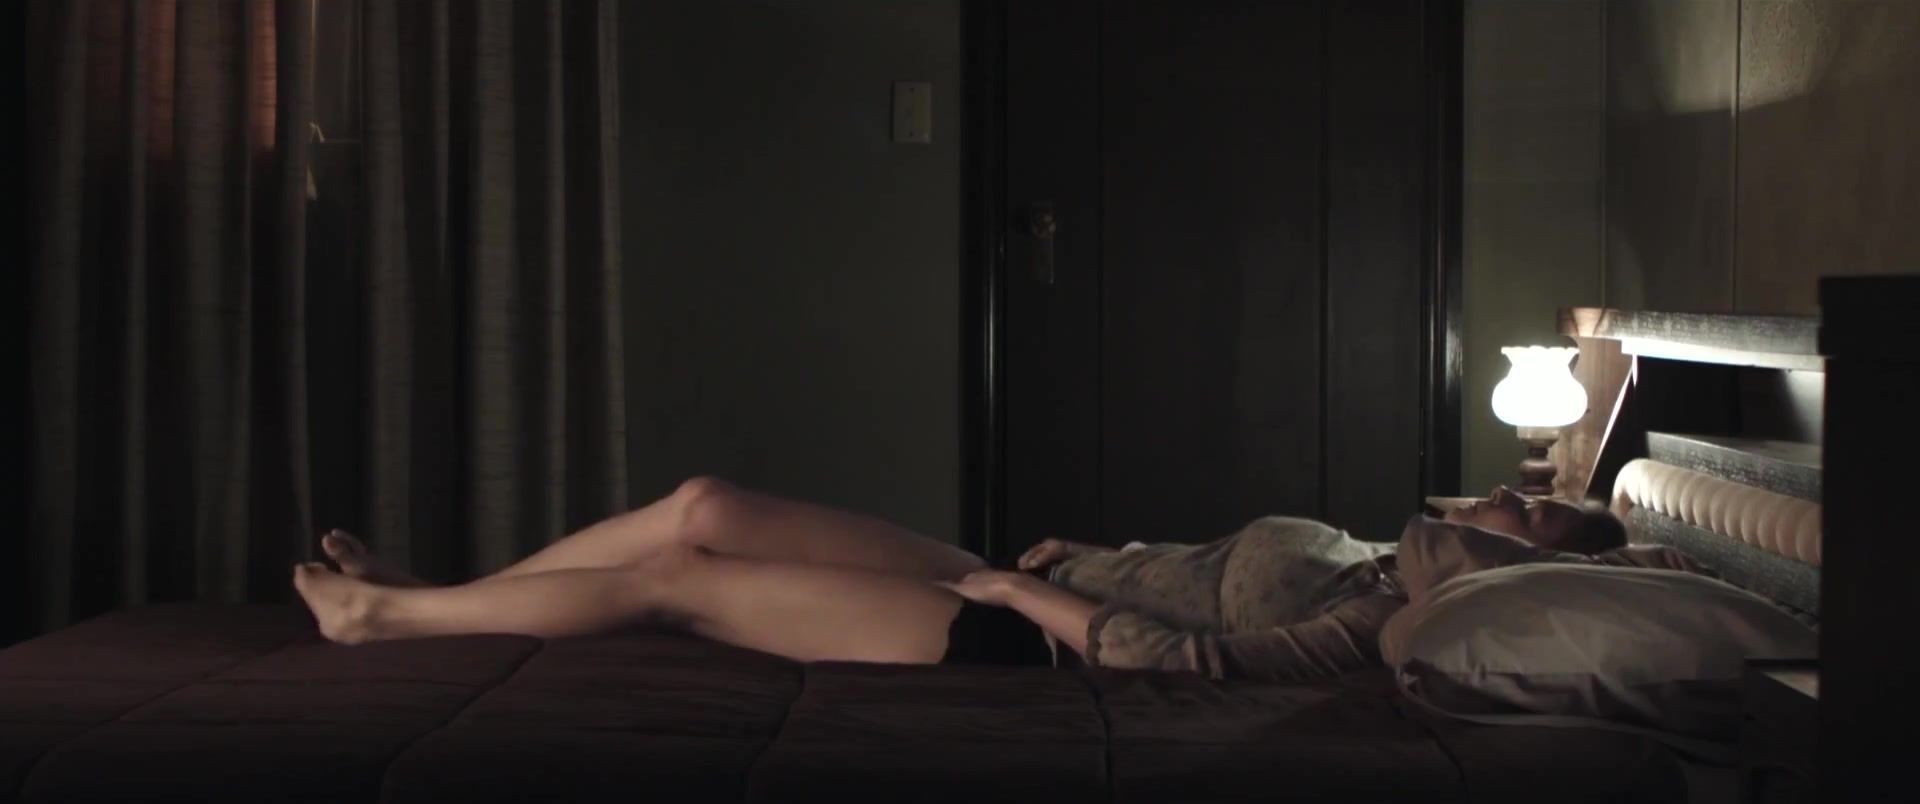 Big Pussy Leeanna Walsman Nude - Dawn (2015) HotShame - 2